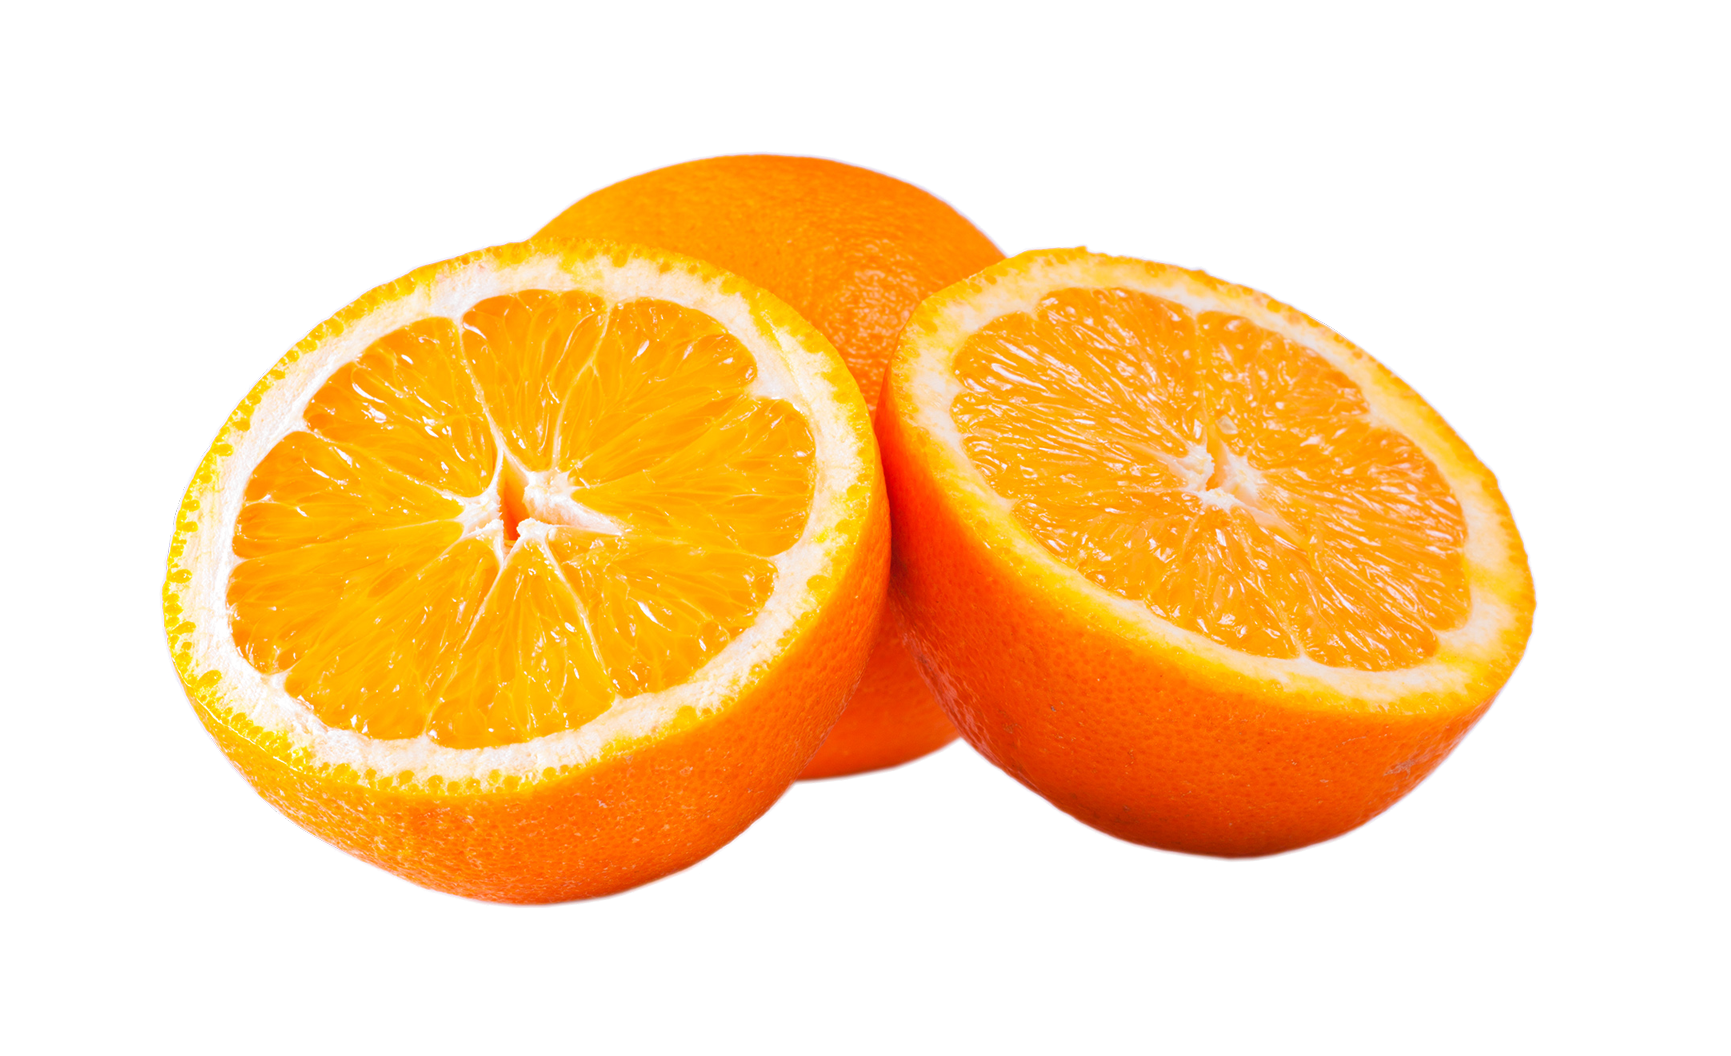 Orange  slices